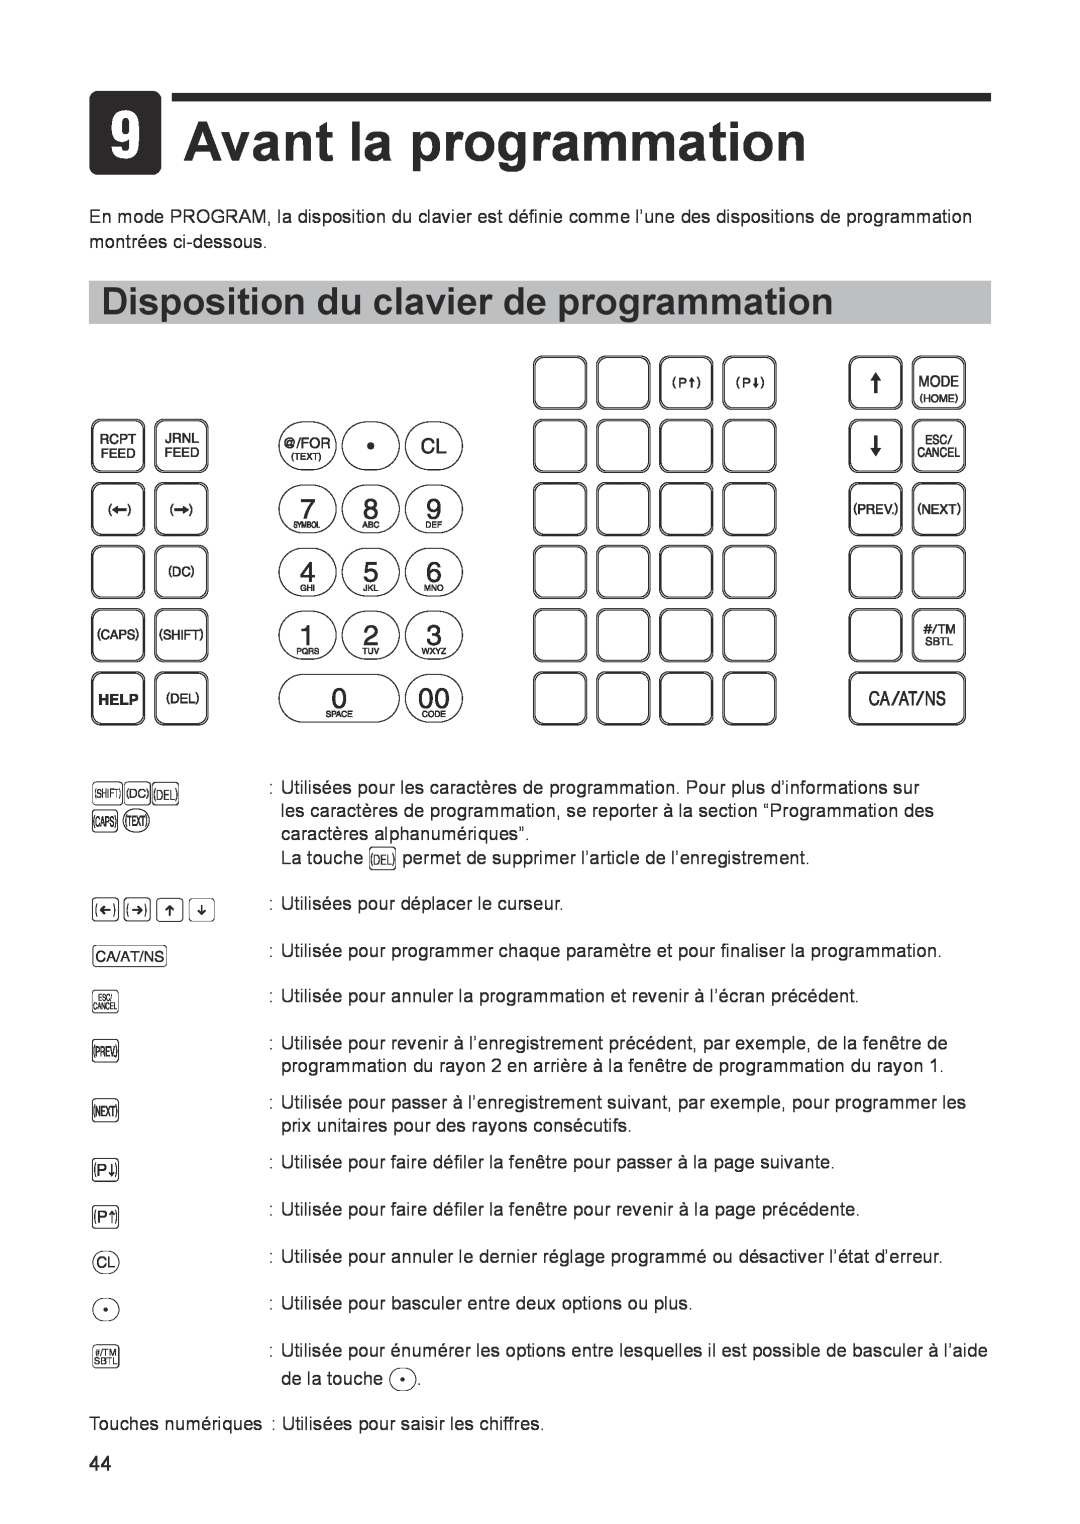 Sharp ER-A347A instruction manual Avant la programmation, Disposition du clavier de programmation 